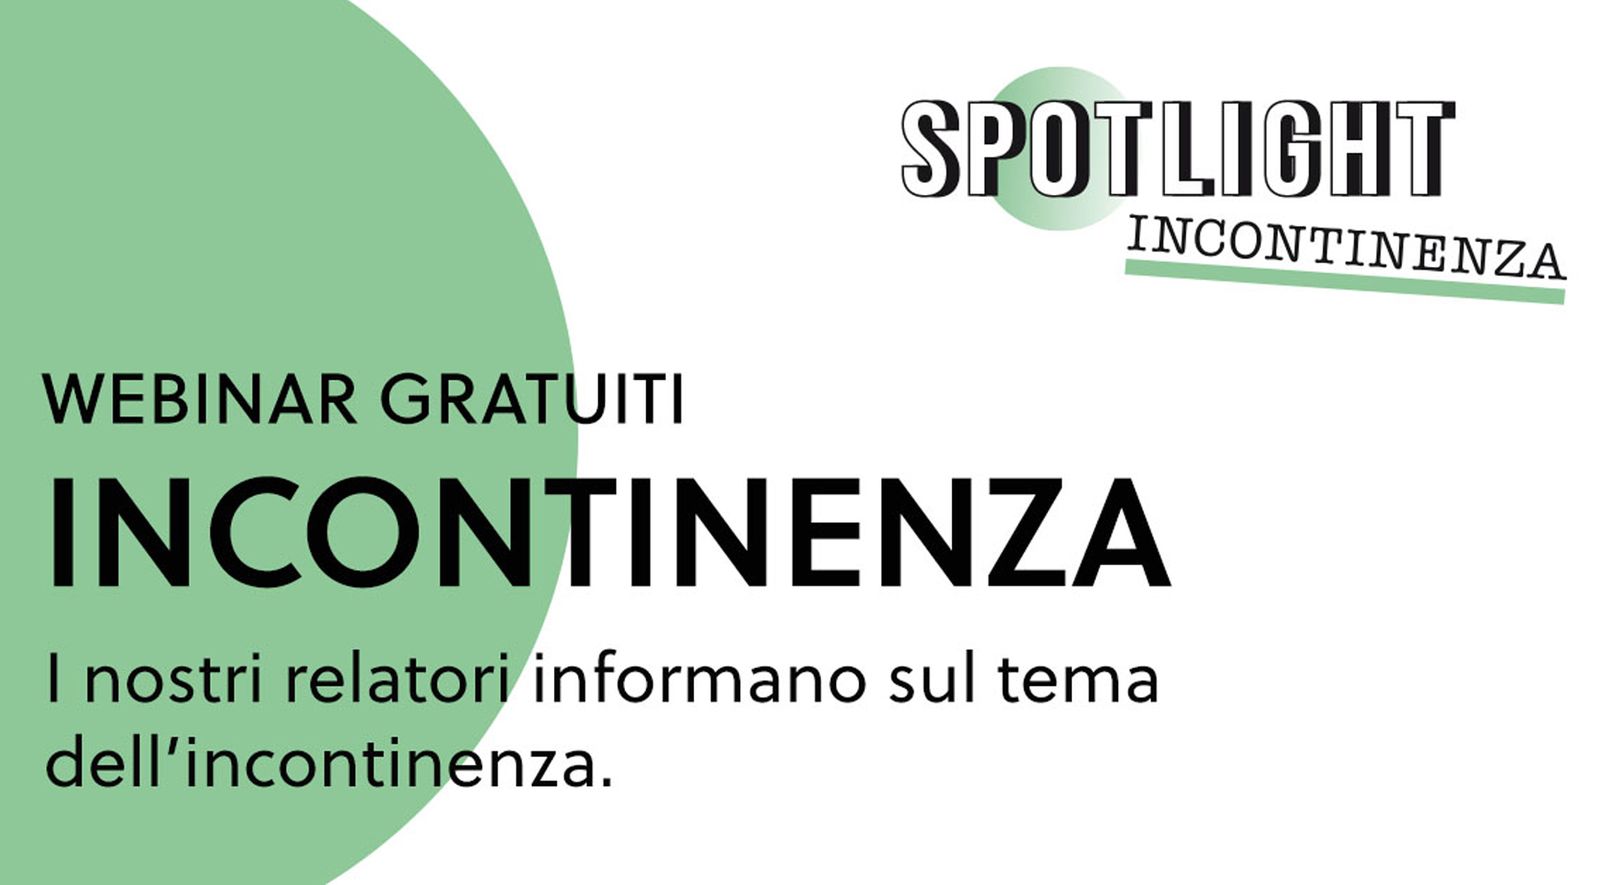 Webinar-Reihe „Spotlight Inkontinenz“ auf Italienisch